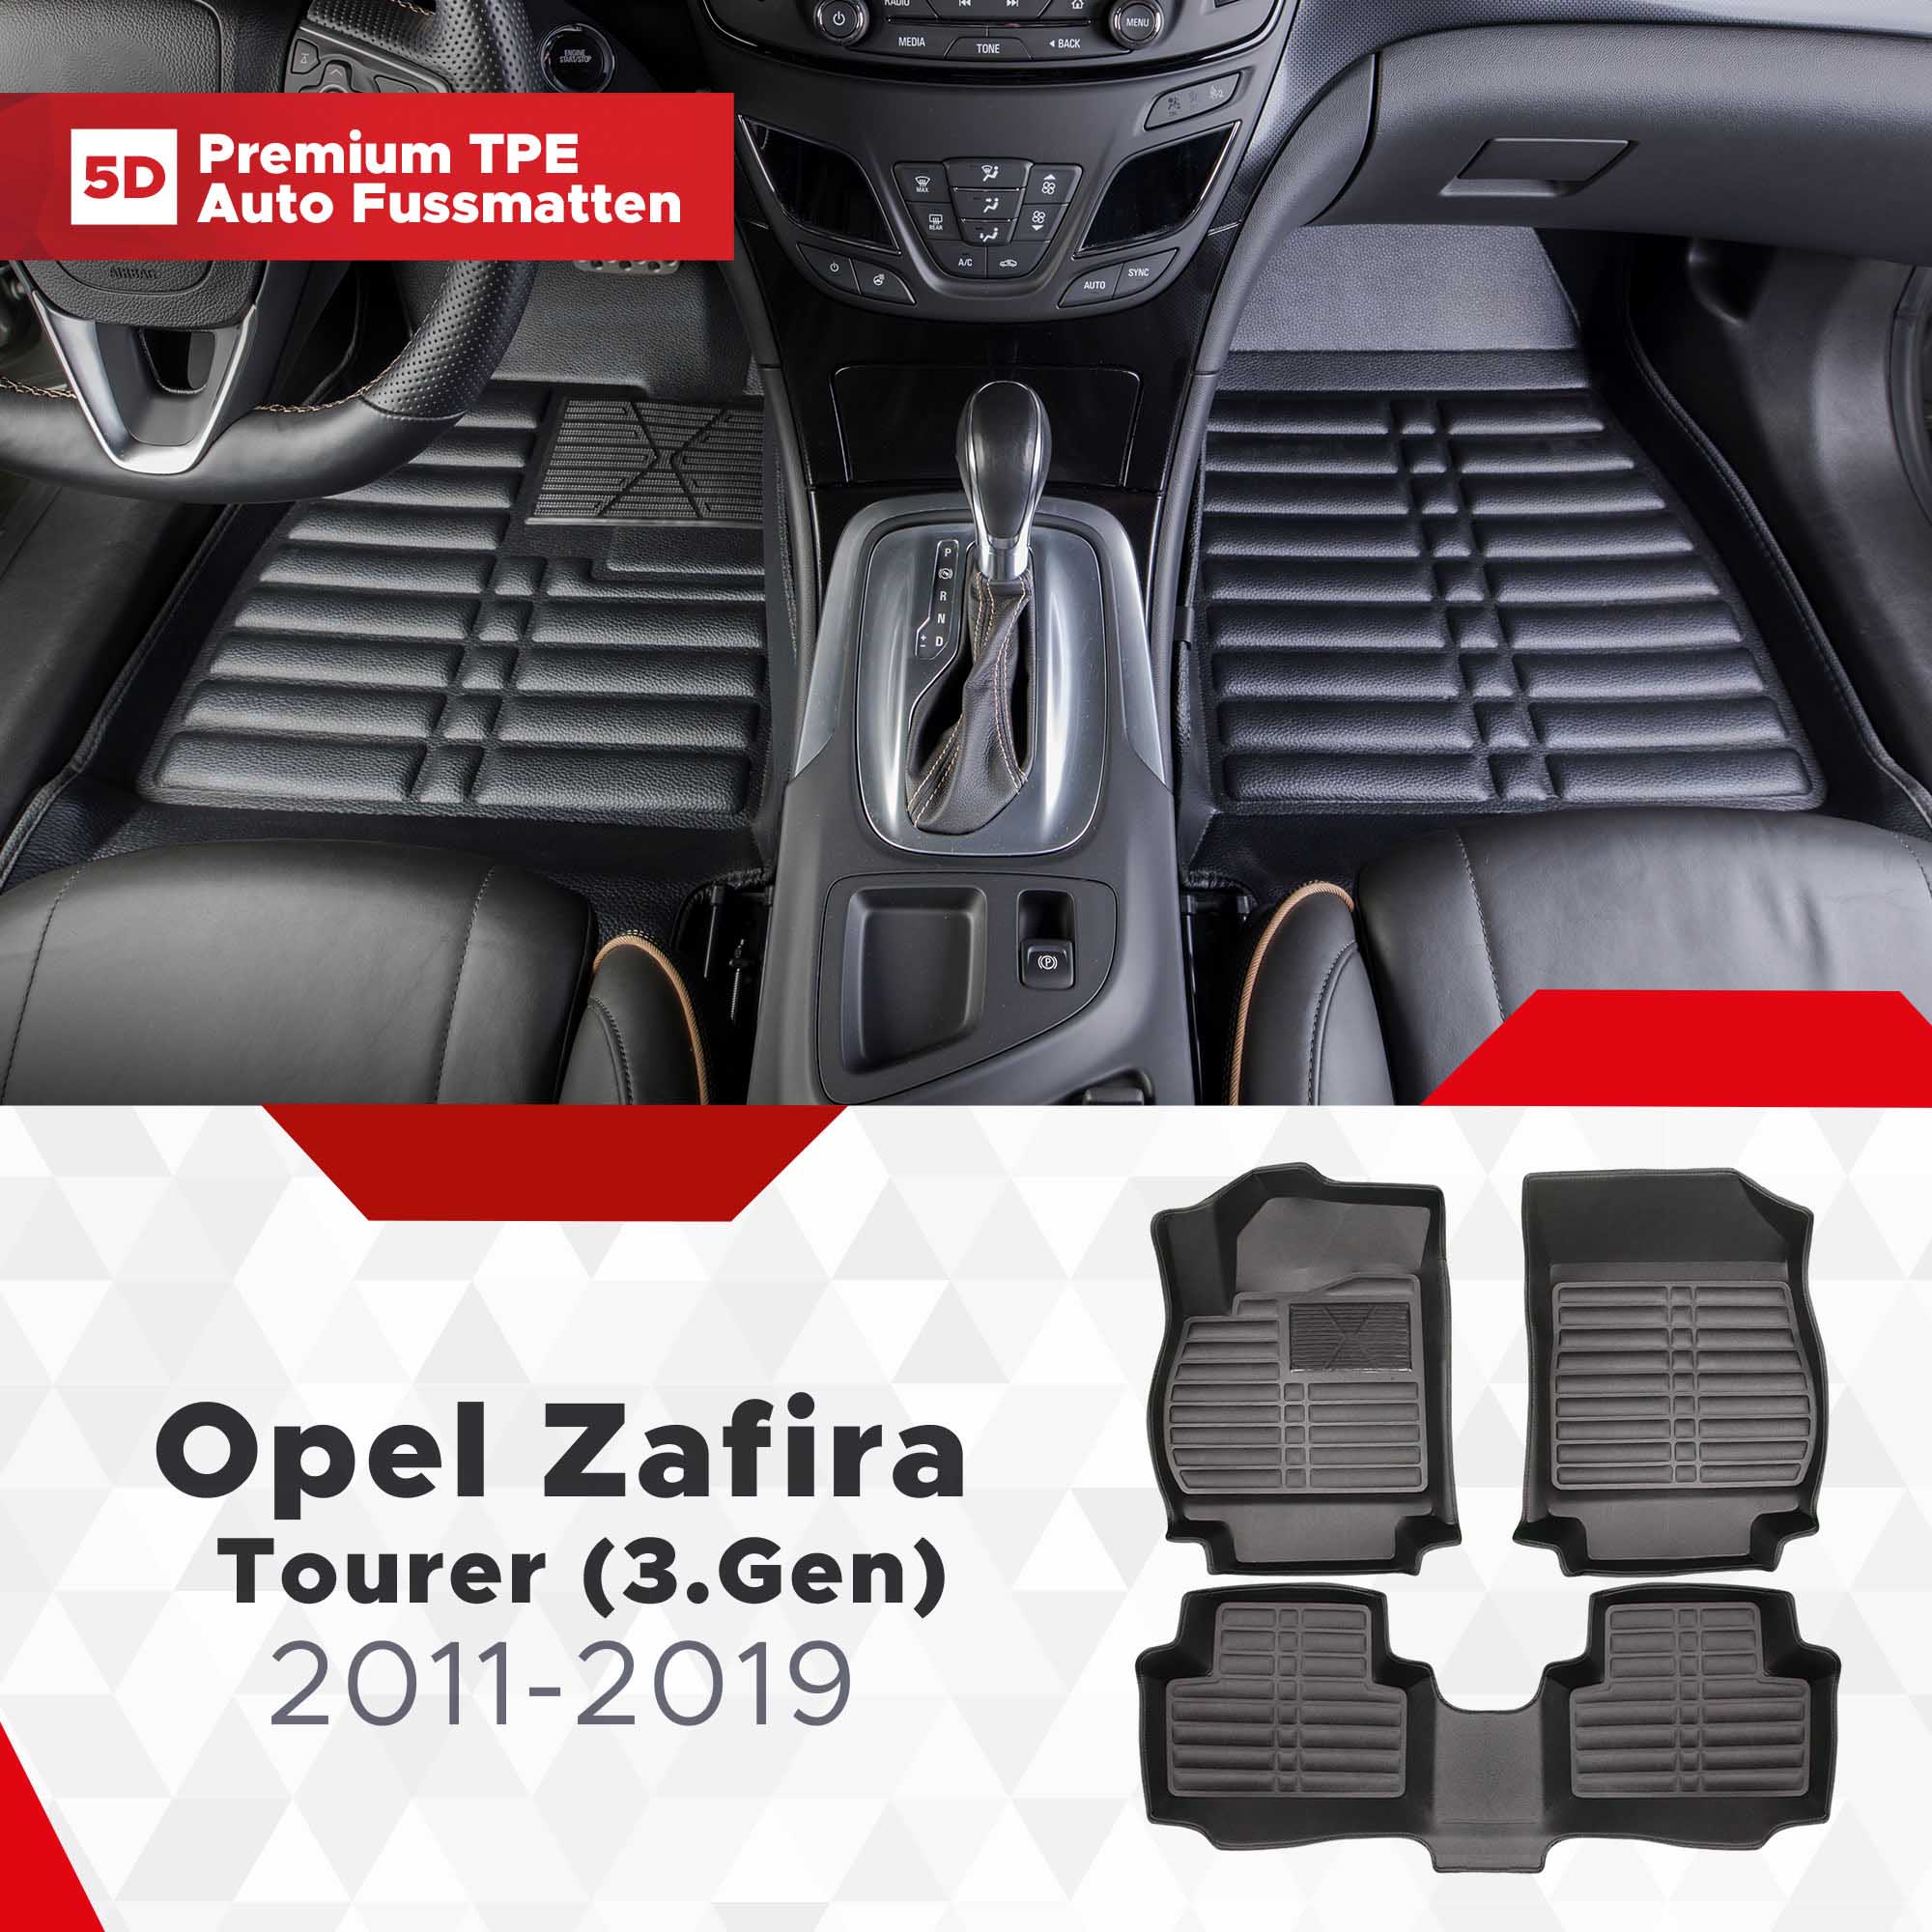 TPE 2011-2019 Bj 5D (3.Gen) Opel Tourer Fussmatten Zafira